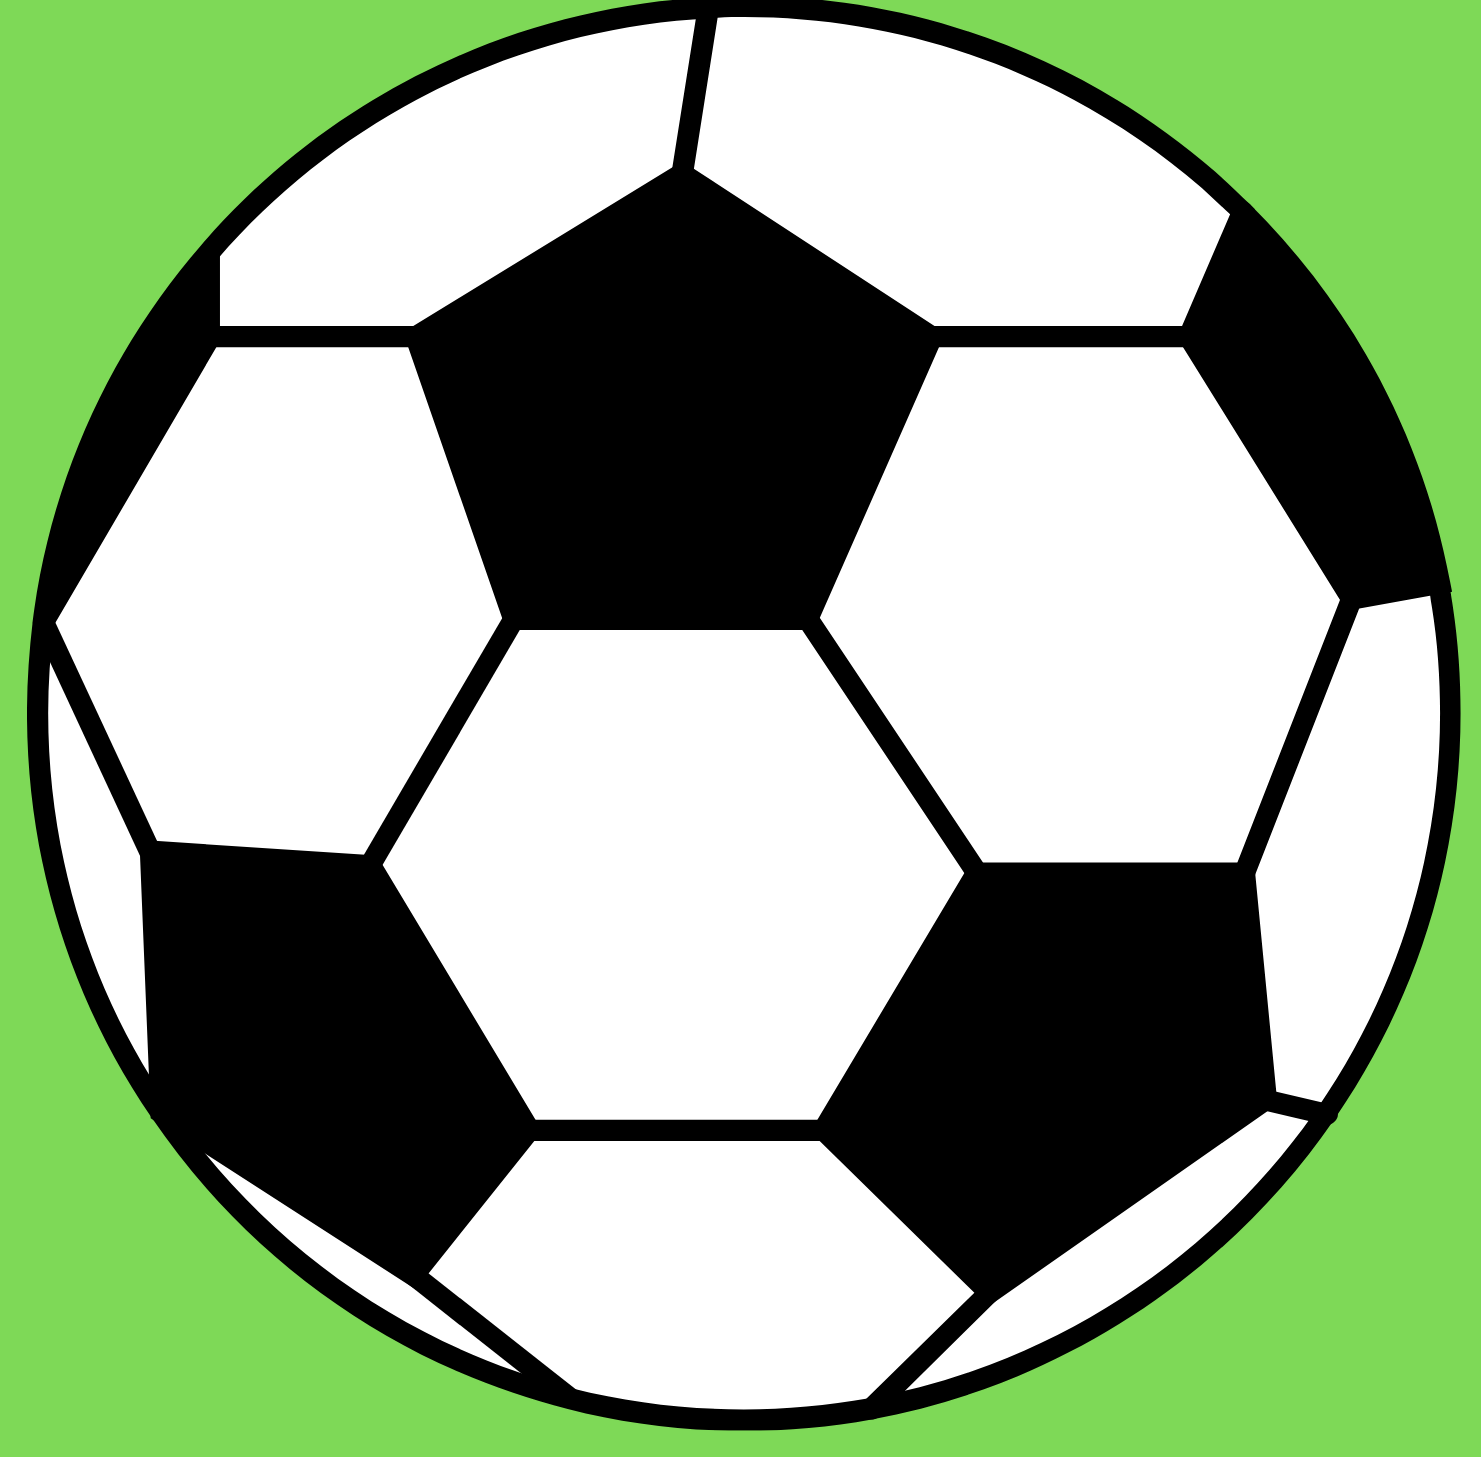 Footballshop - חנות כדורגל מקצועית